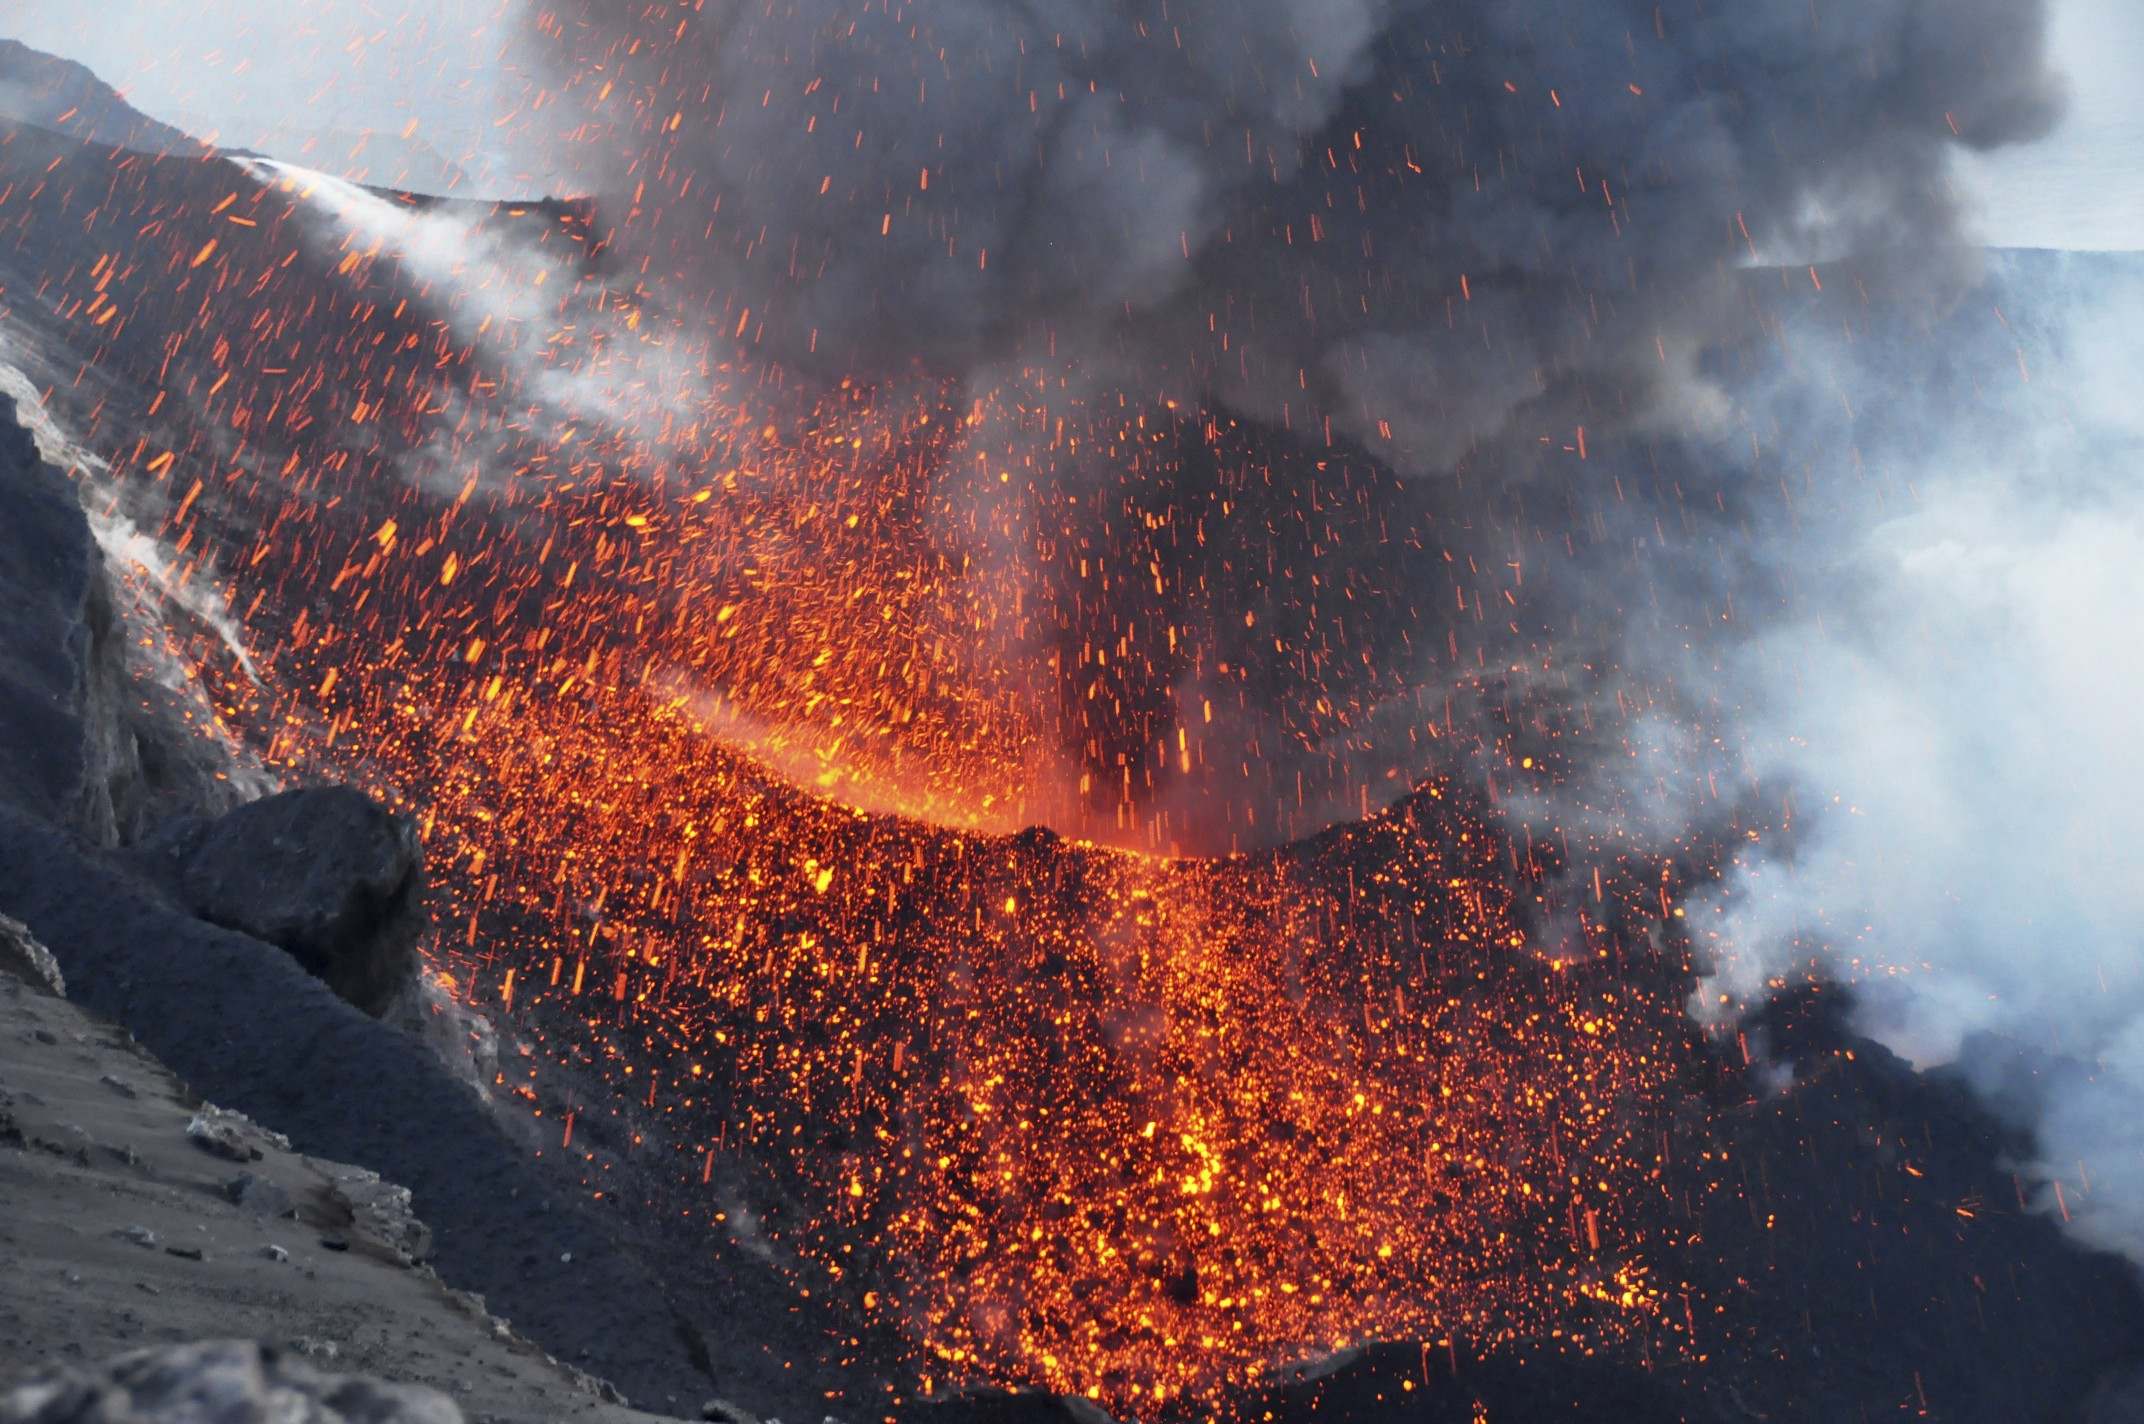 An eruption from the caldera